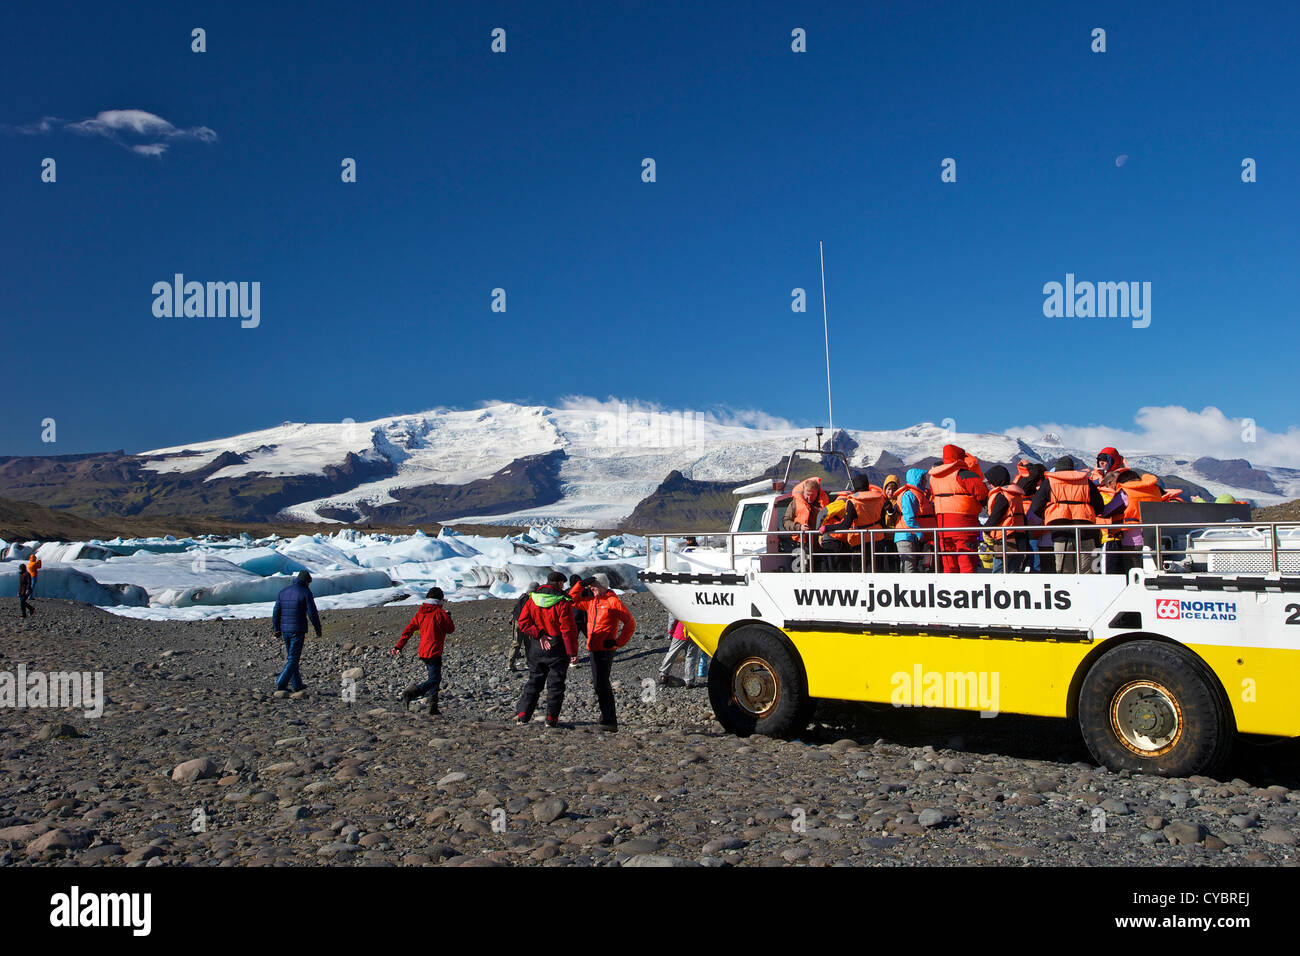 Barco anfibio para llevar a los turistas en el lago glaciar de Jokulsarlon con nieve en el casquete de hielo masiva de Vatnajokull detrás de Islandia Foto de stock